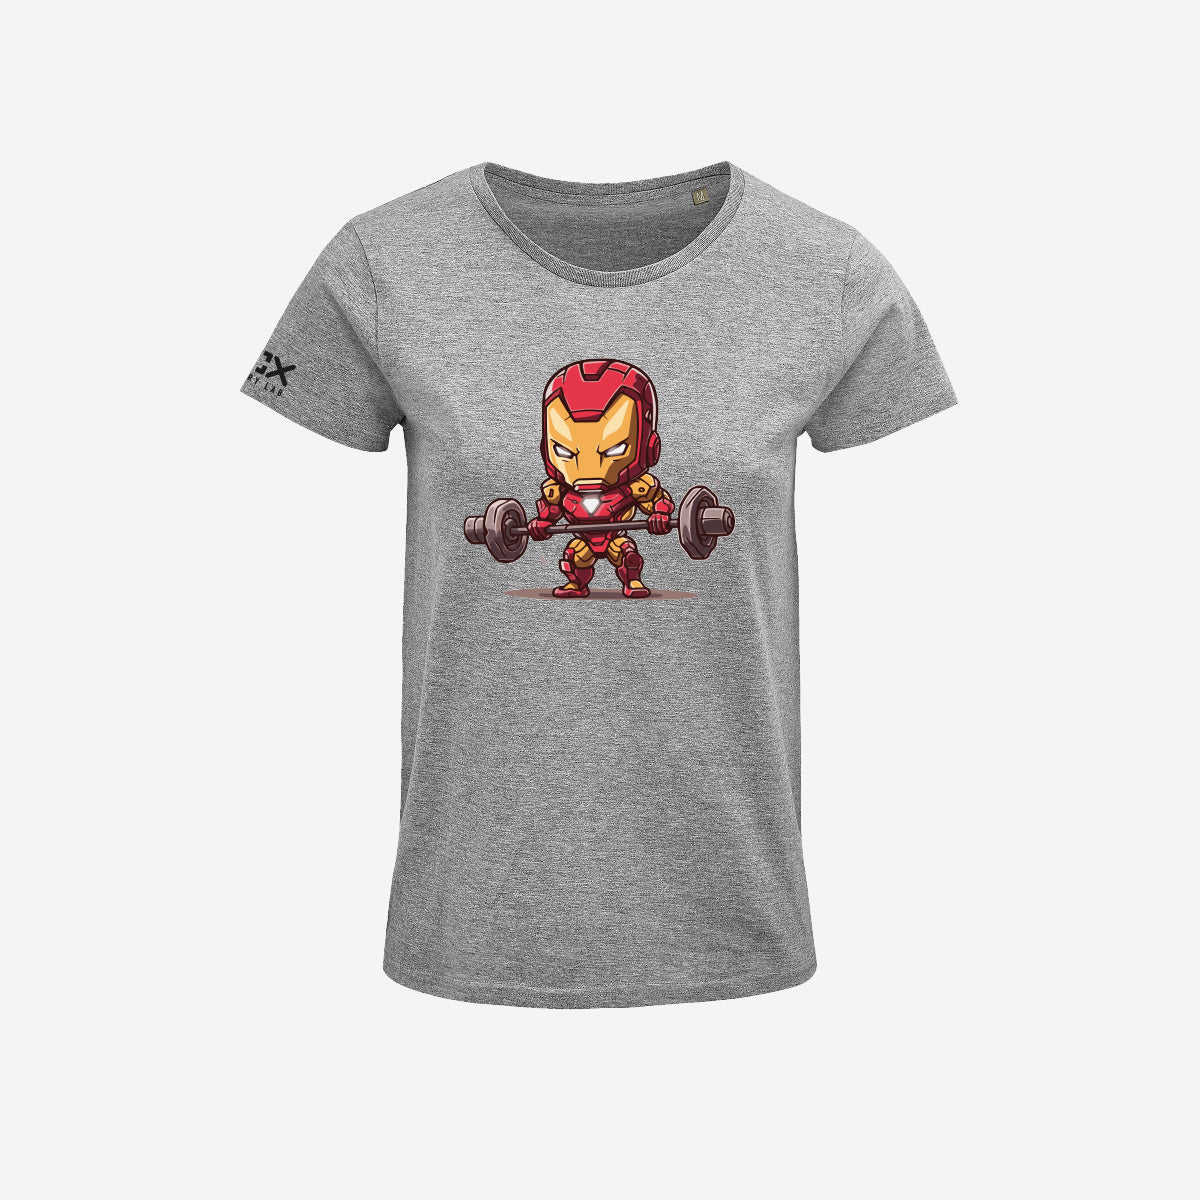 T-shirt Donna - Ironman